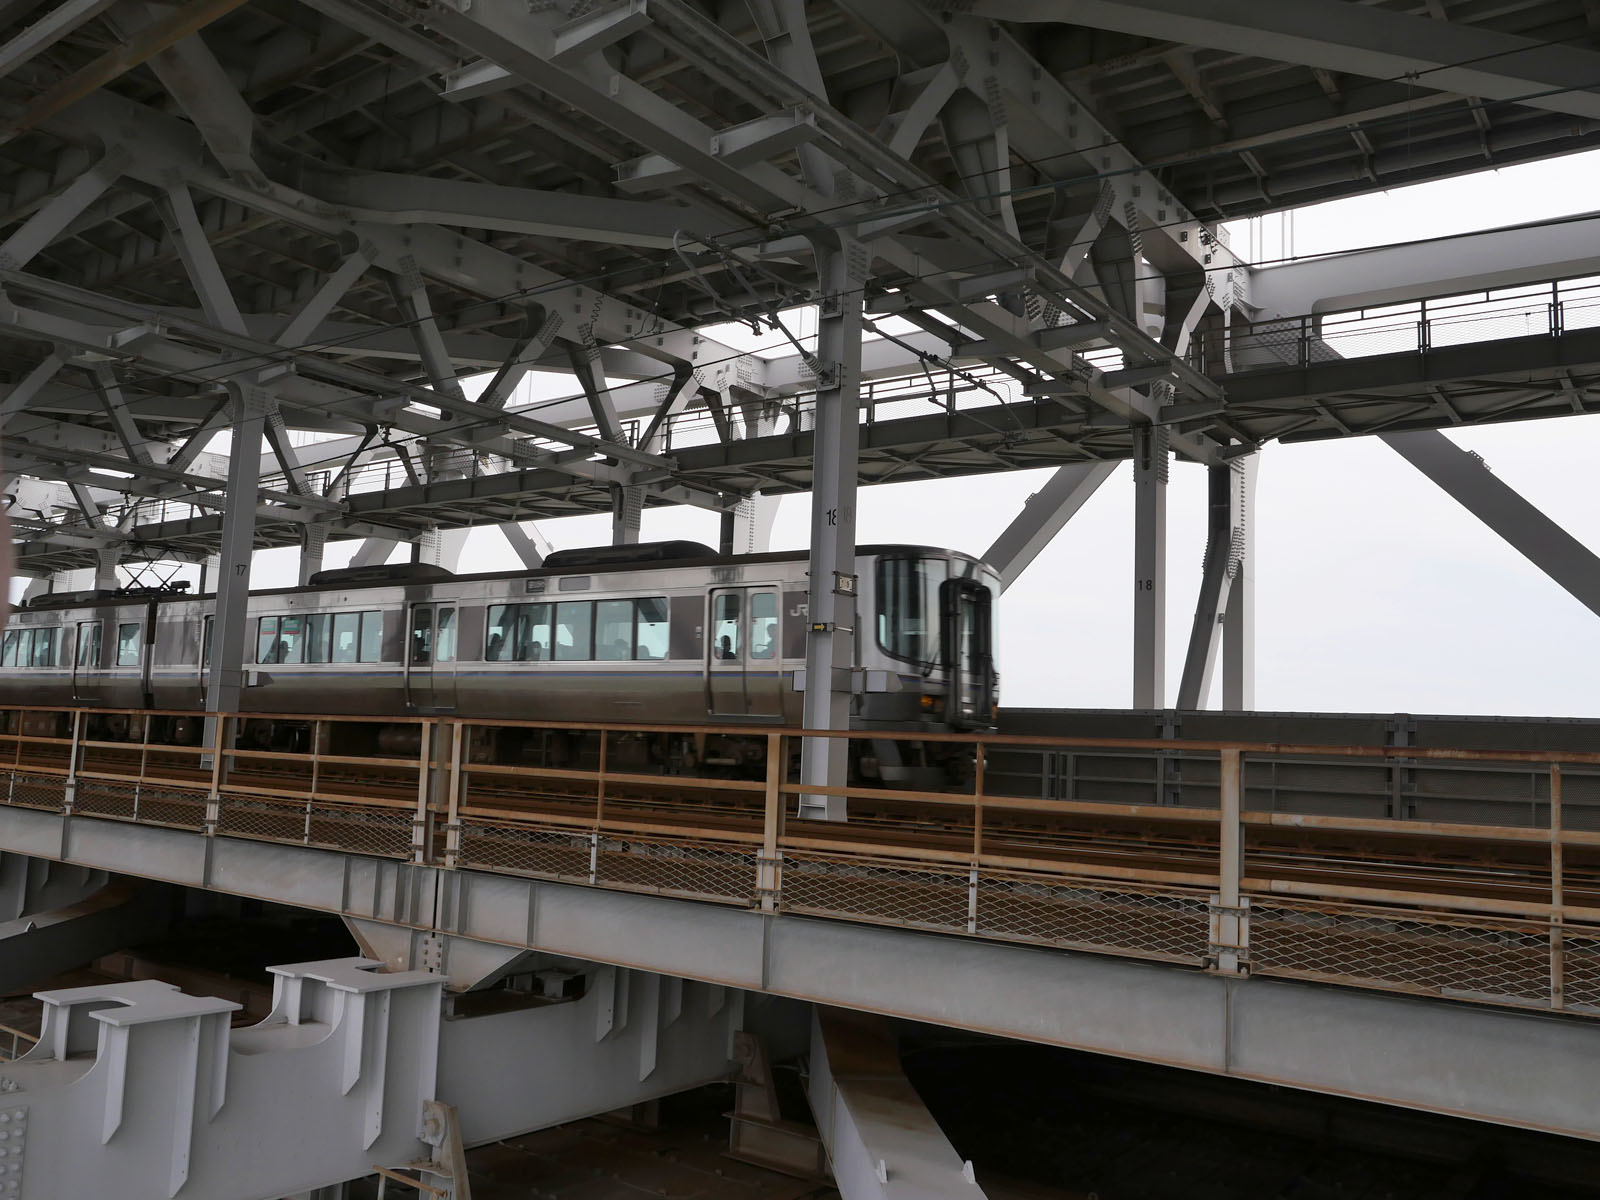 瀬戸大橋スカイツアーに参加したよ！普段立ち入ることのできない瀬戸大橋の内部を歩くよ。